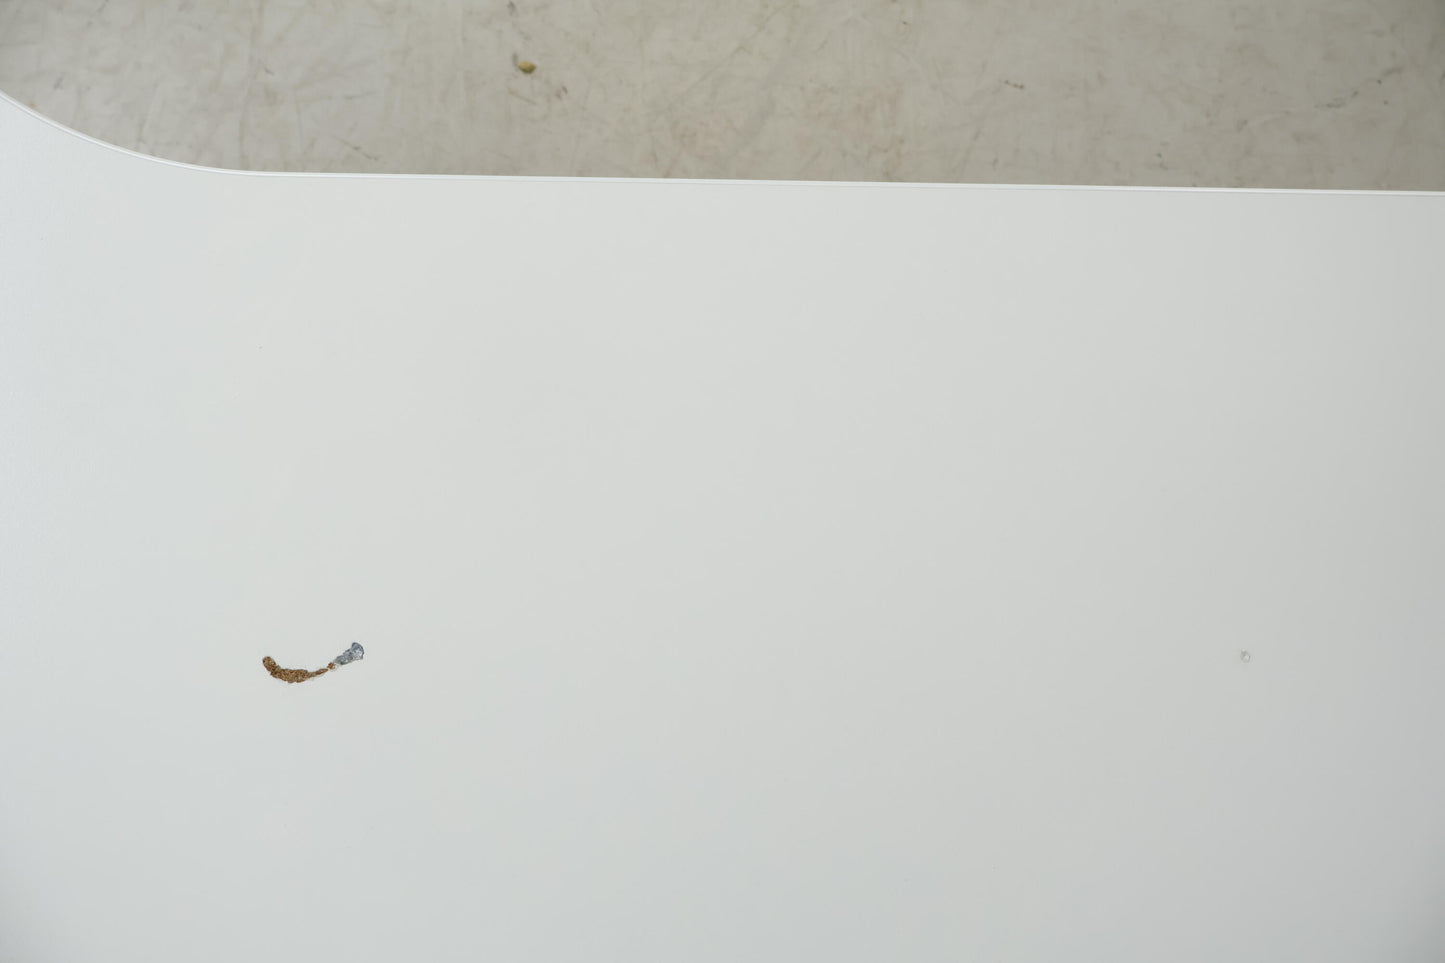 Nyrenset | Hvitt Ikea Bekant hjørneskrivebord